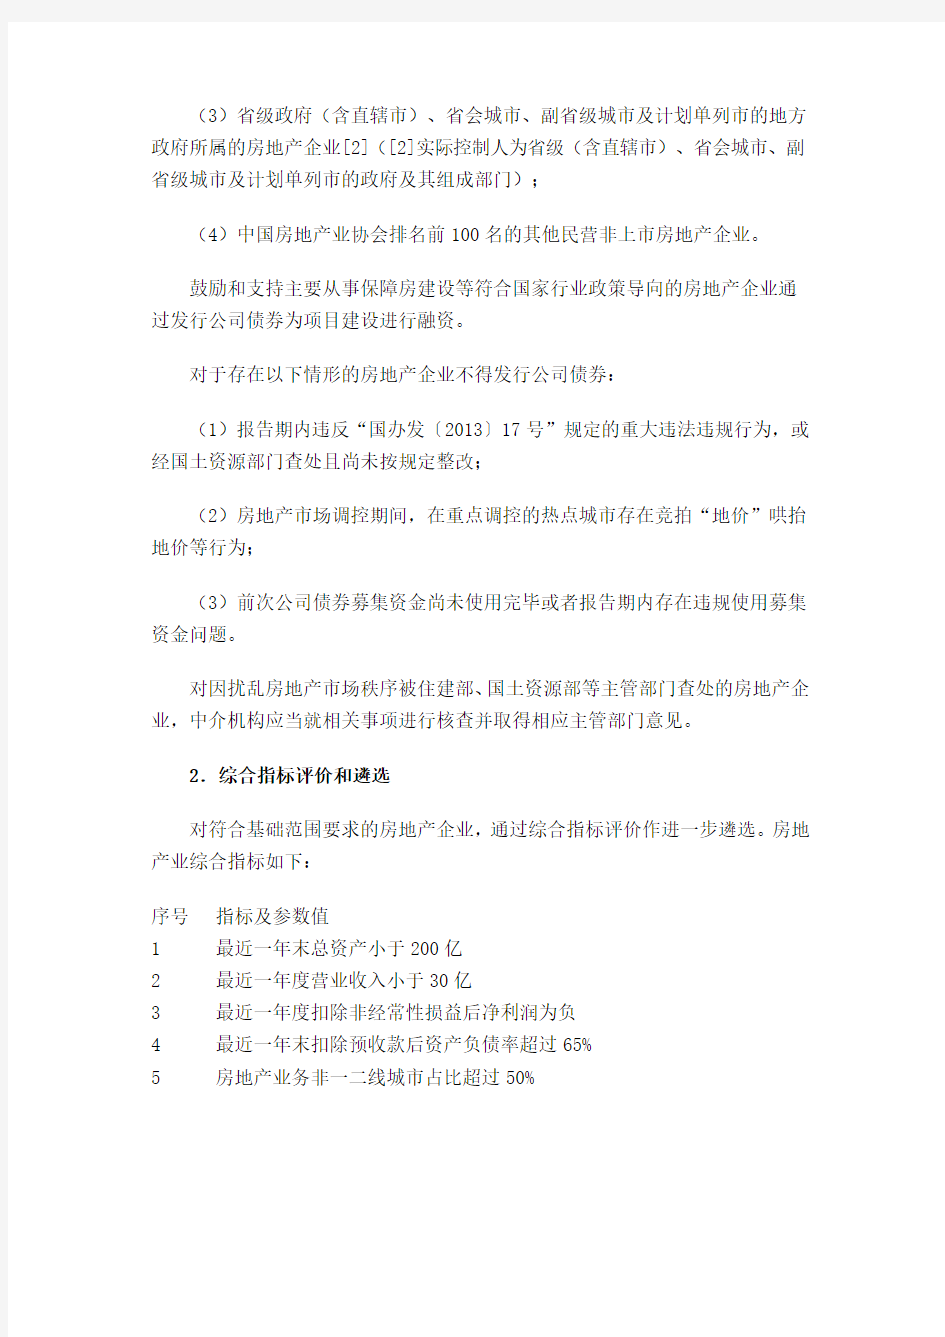 上海证券交易所关于试行房地产产能过剩行业公司债券分类监管的函